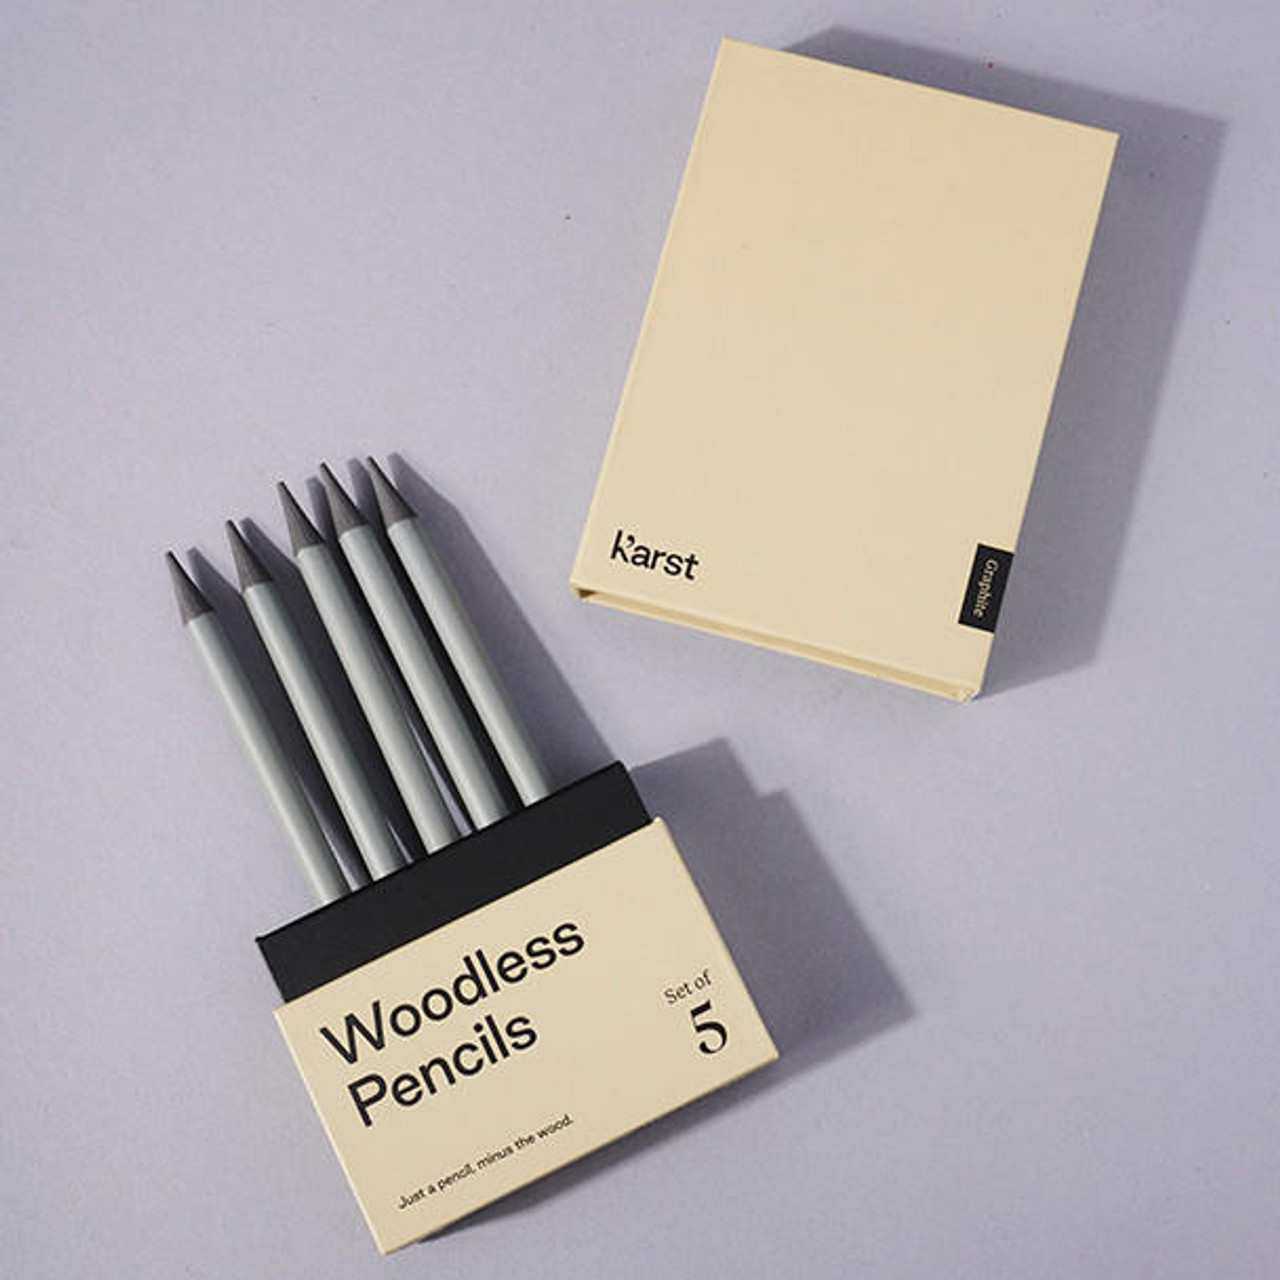 Karst Woodless Artist Pencils, Set of 24